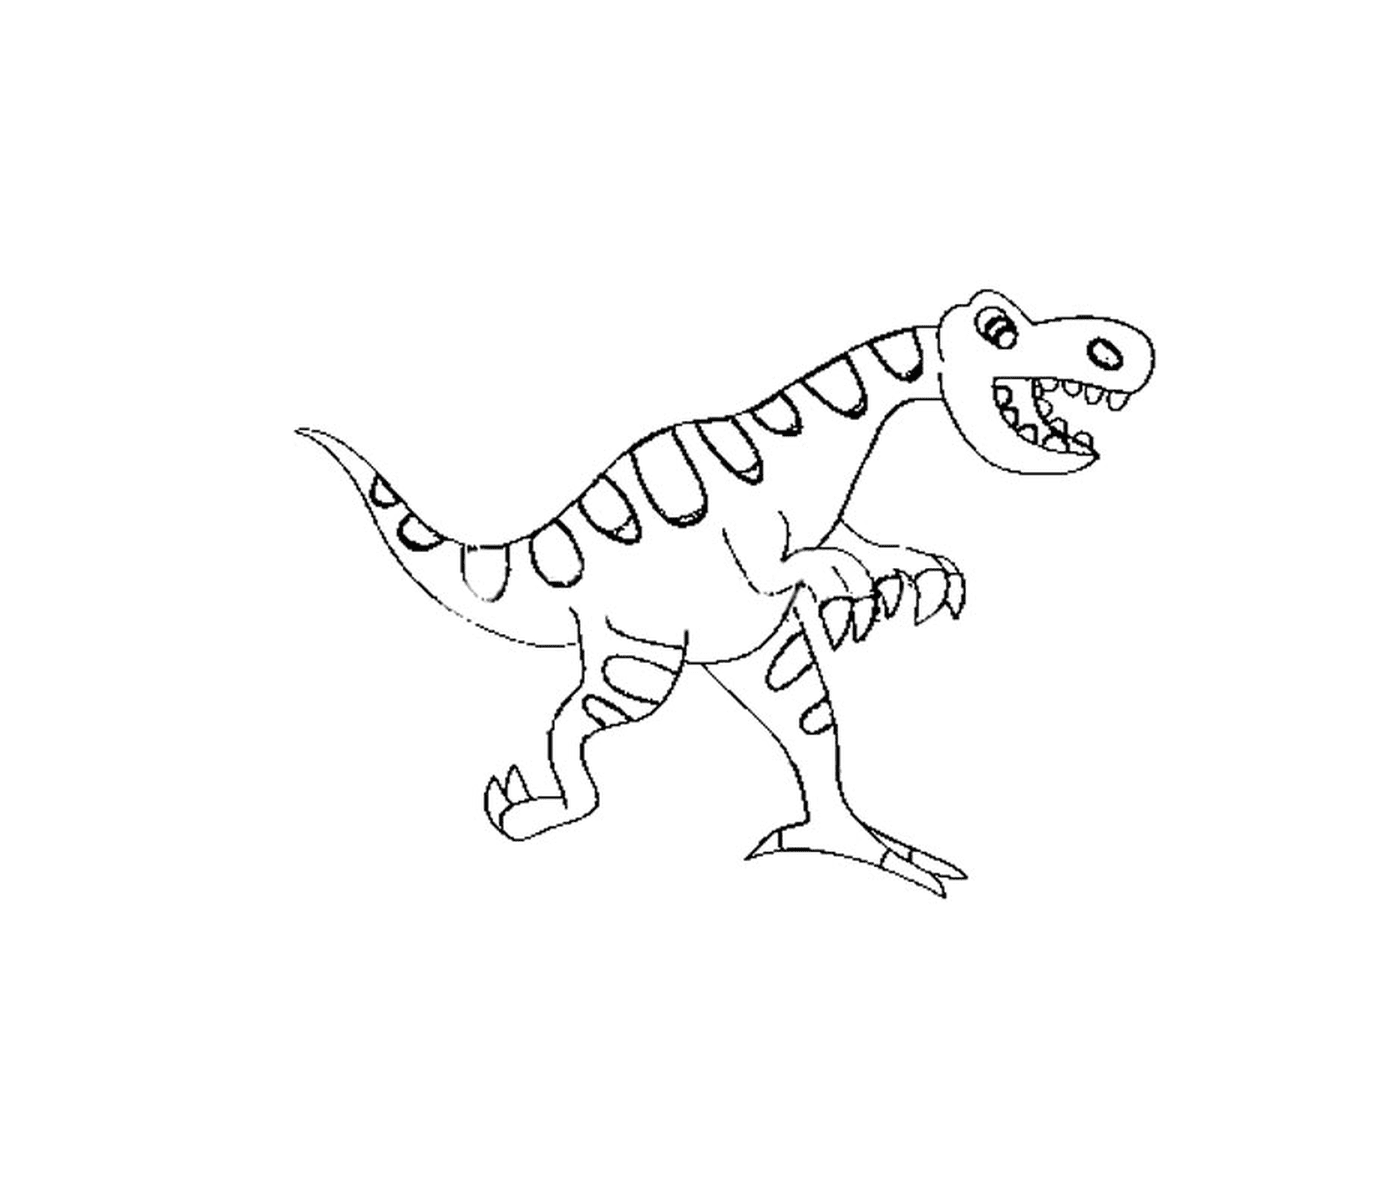  Dinossauro de Jurassic Park, sorriso adorável 